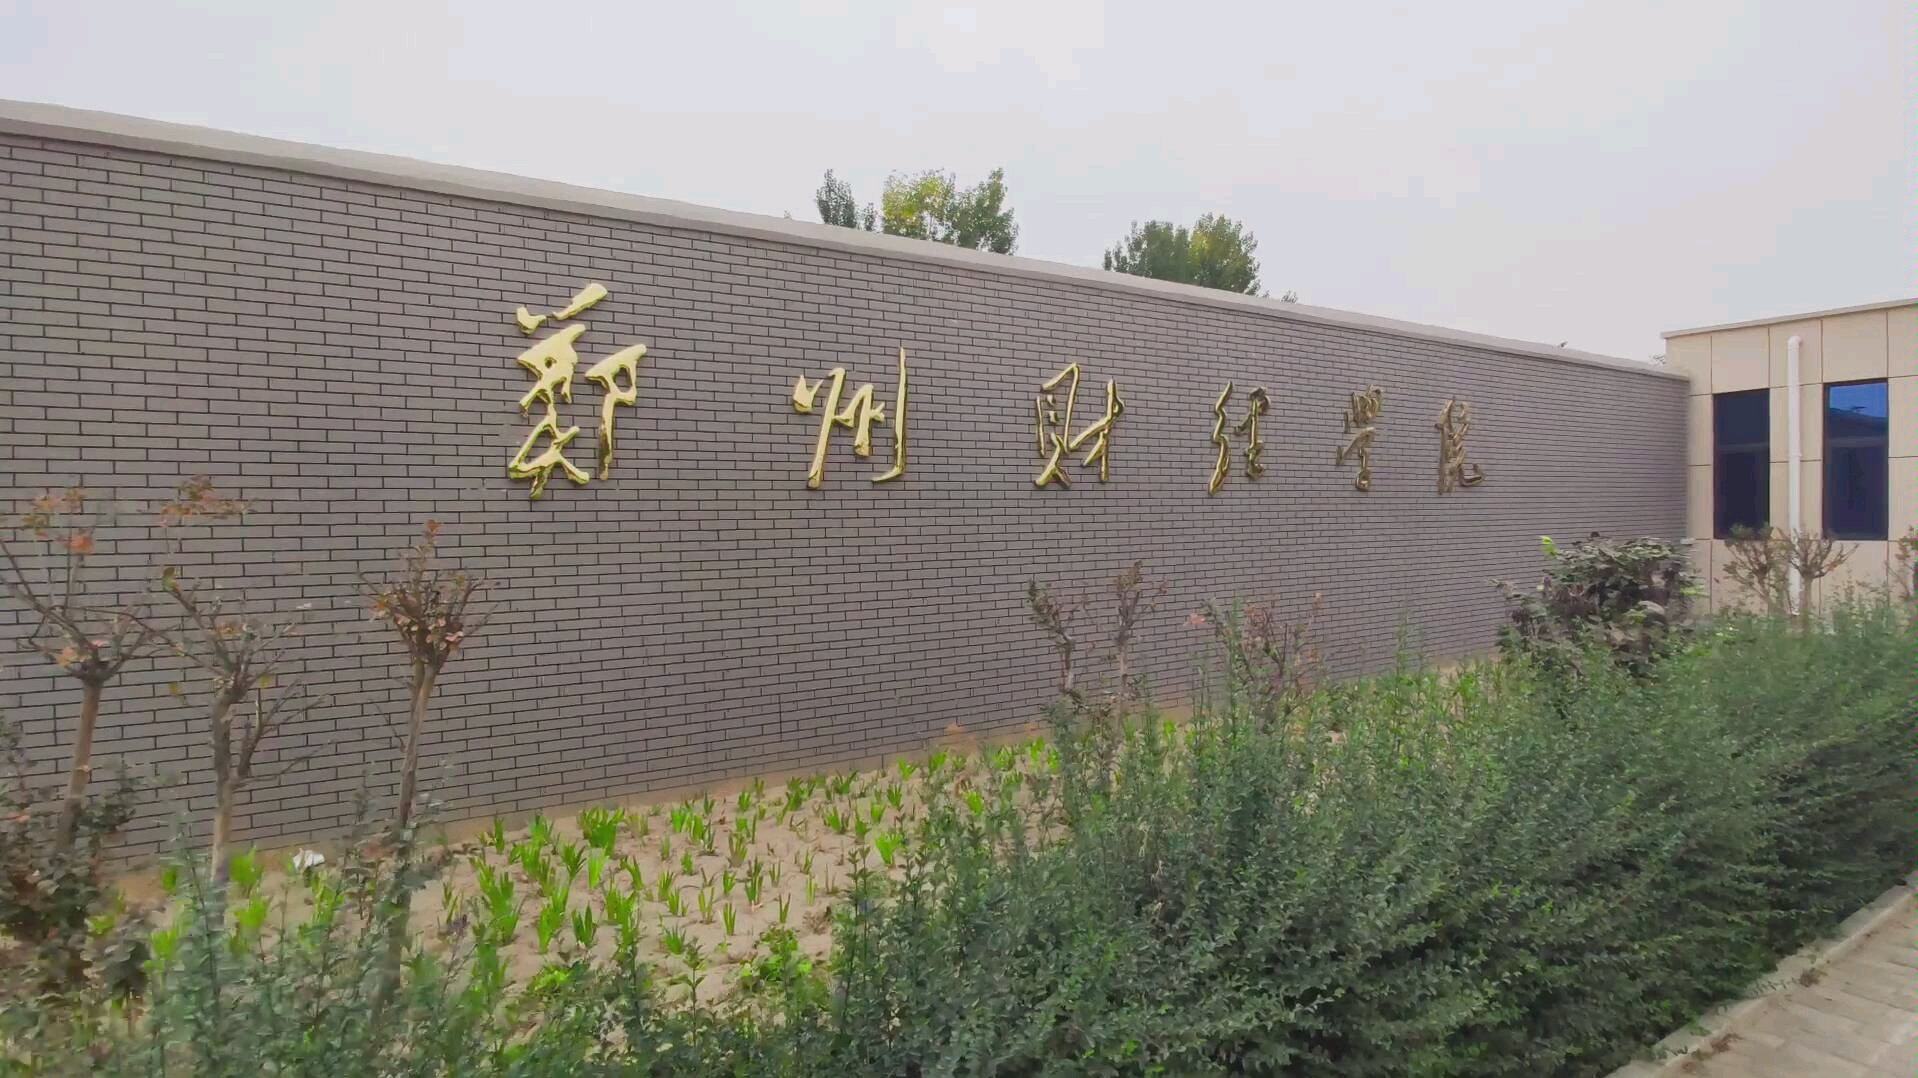 郑州财经学院校园图图片